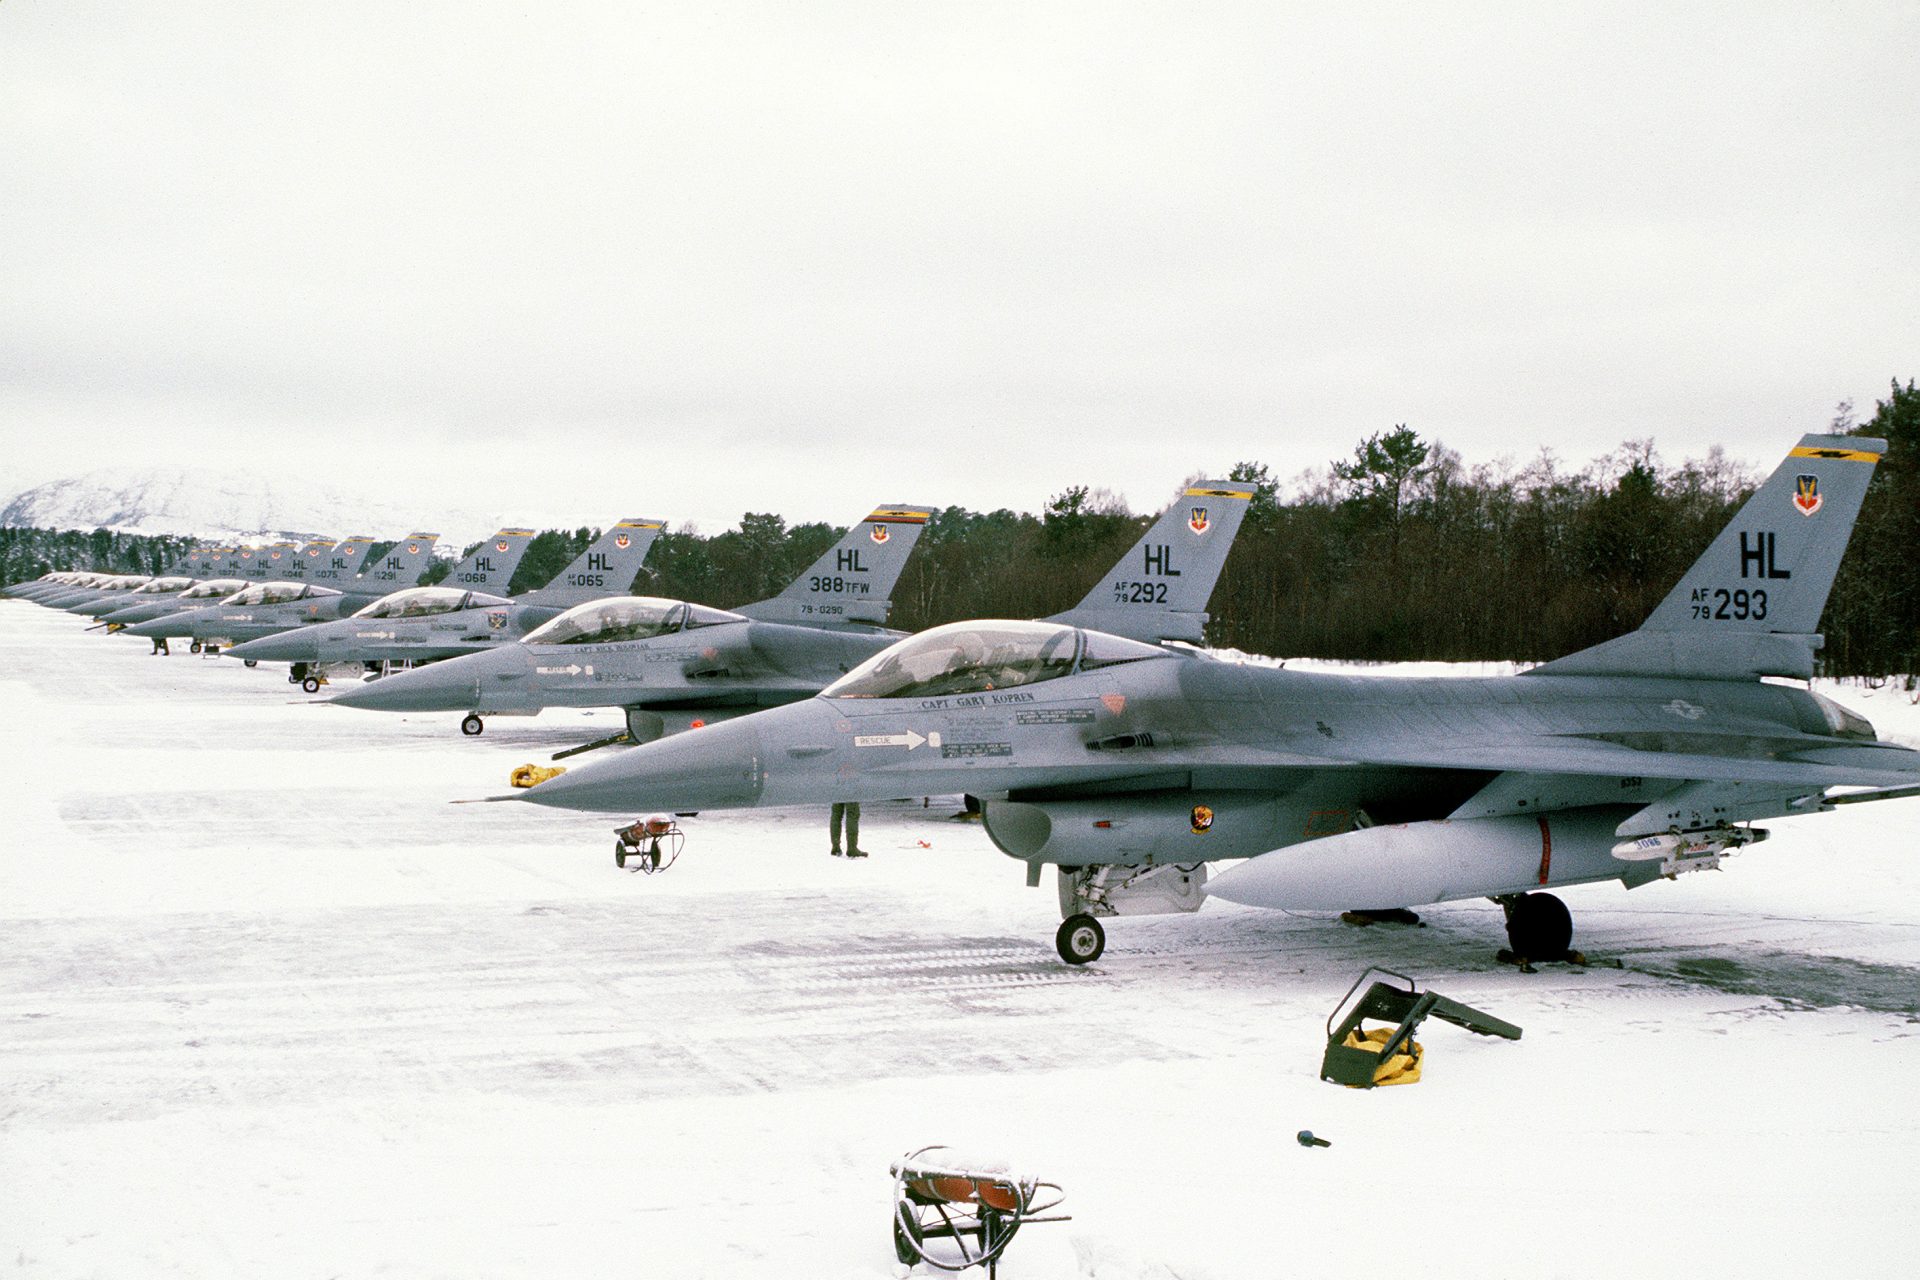 Norway is sending 22 F-16s